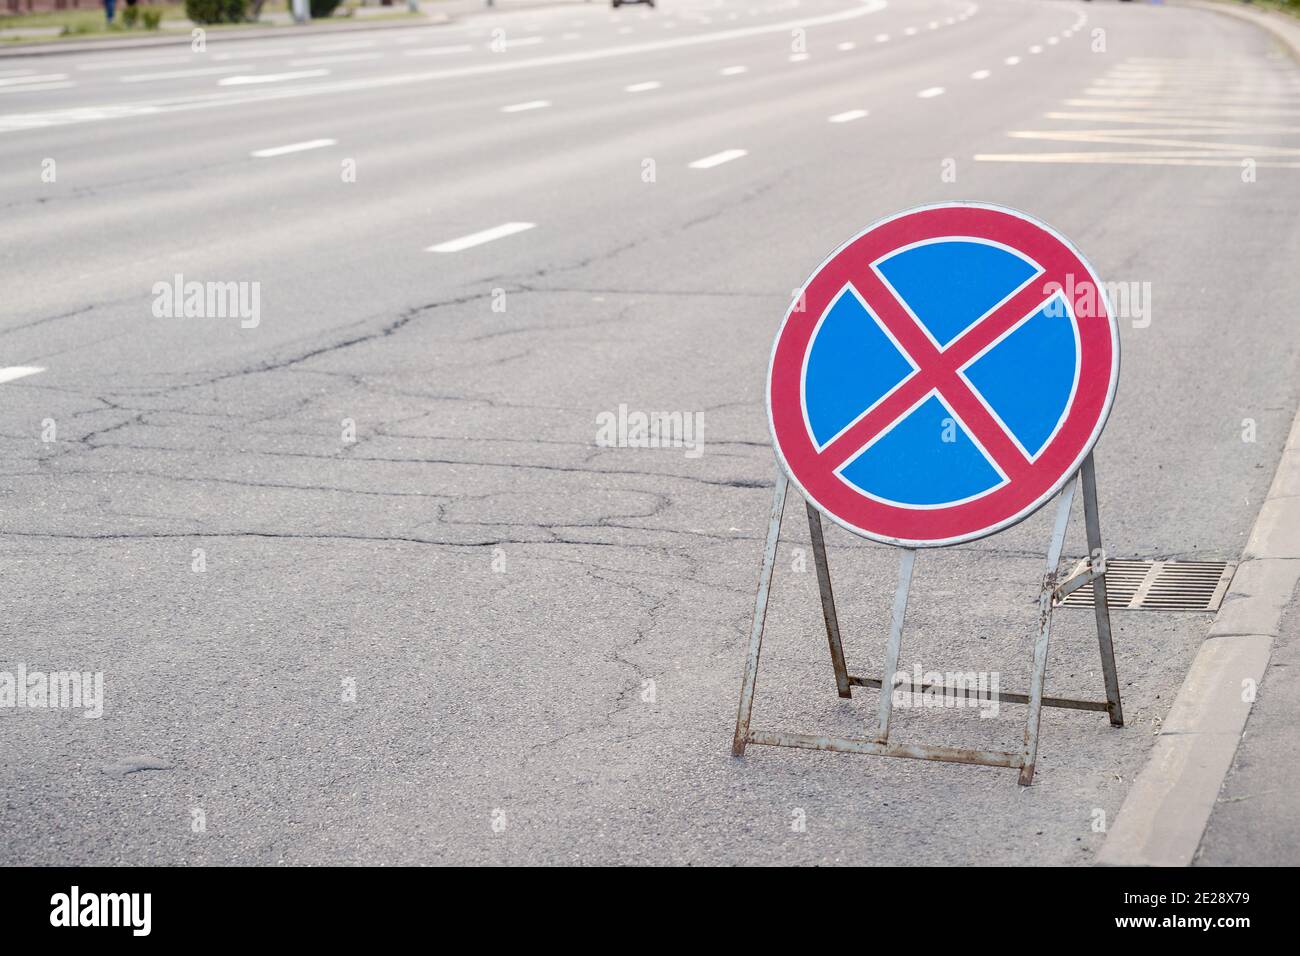 Rundes rotes Kreuz auf blauem Hintergrund Zeichen gegen geknackten Asphalt  Hintergrund. Verkehrszeichen, das bedeutet, dass es nicht erlaubt ist,  Fahrzeuge hier zu parken Stockfotografie - Alamy